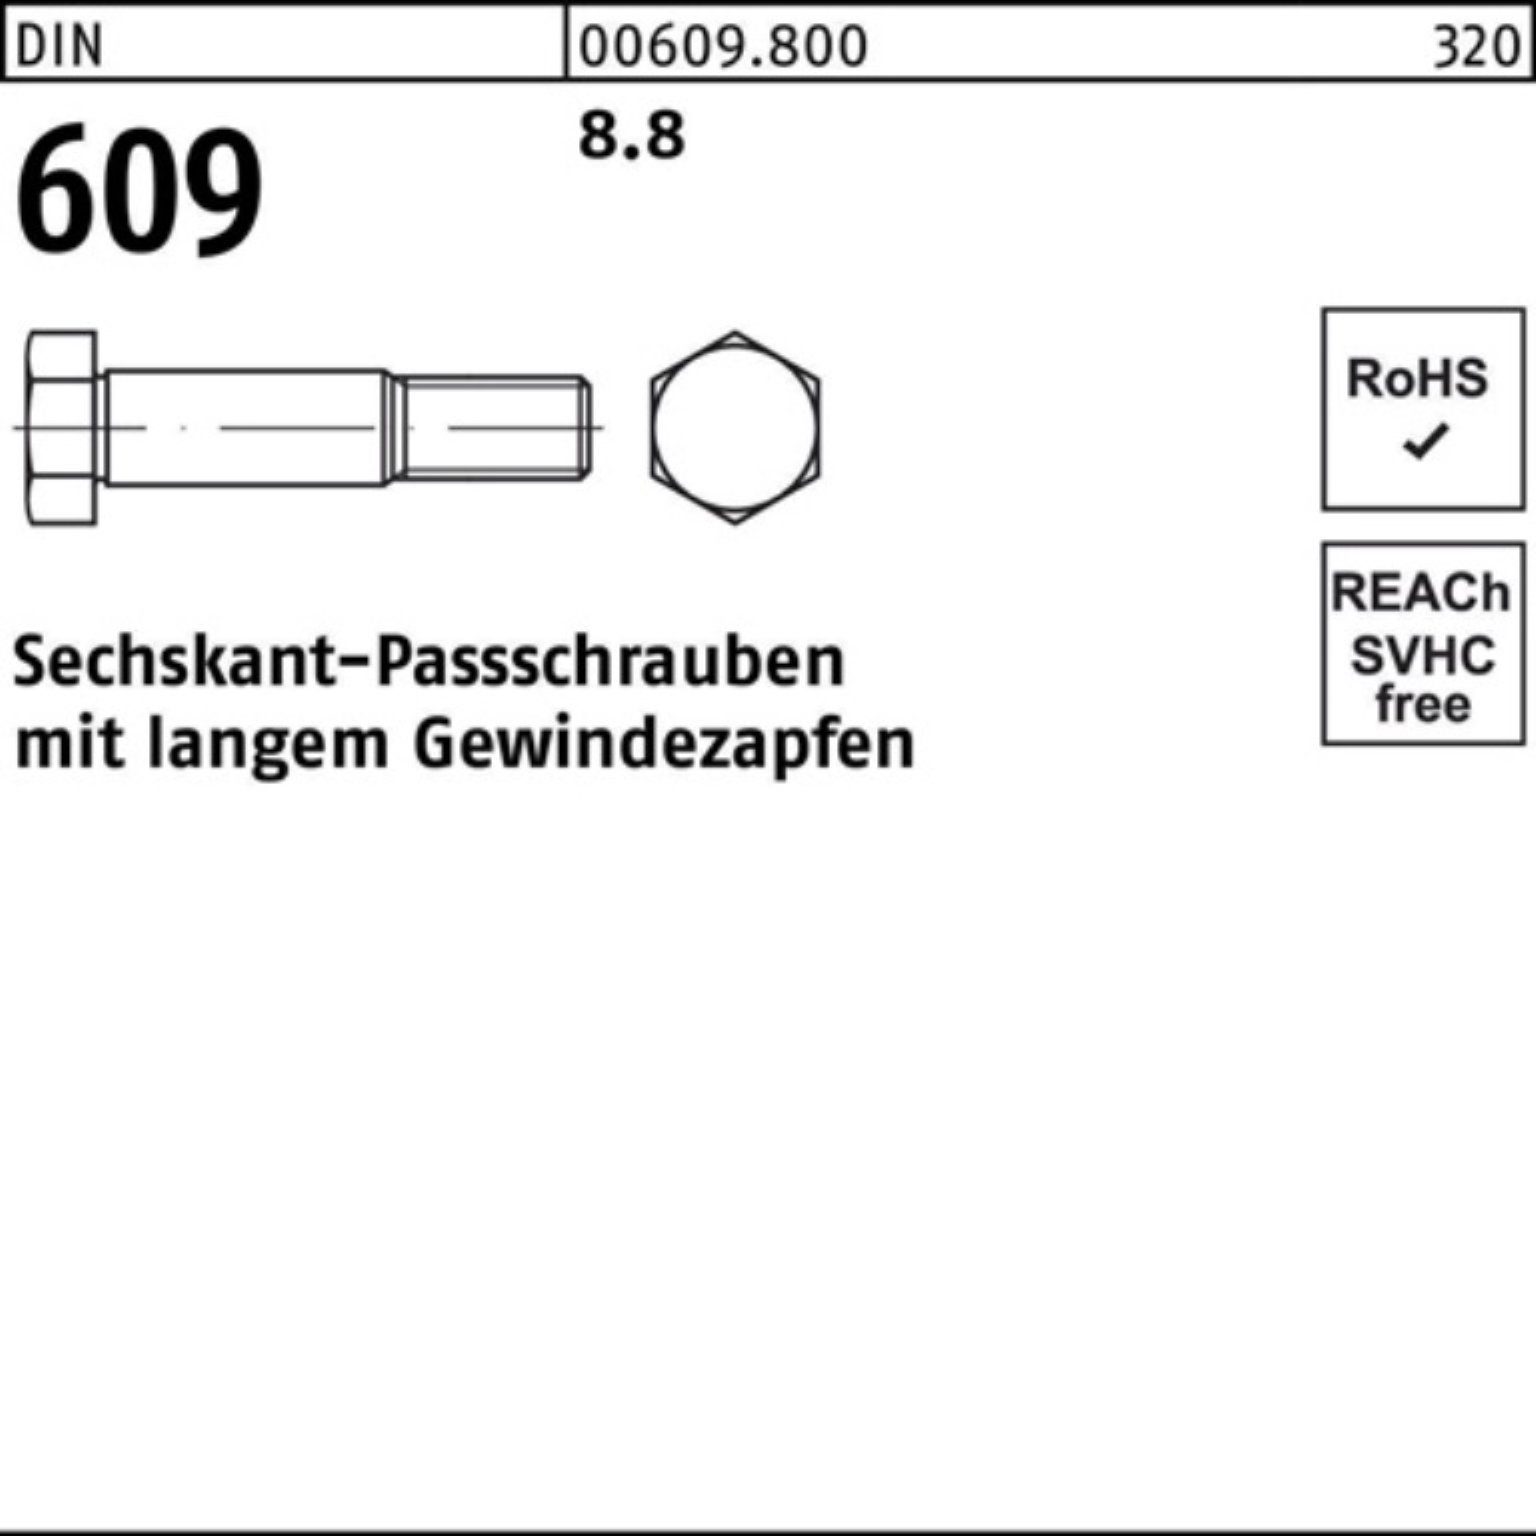 Sechskantpassschraube DIN Schraube langem M8x Pack Reyher 609 Gewindezapfen 100er 60 8